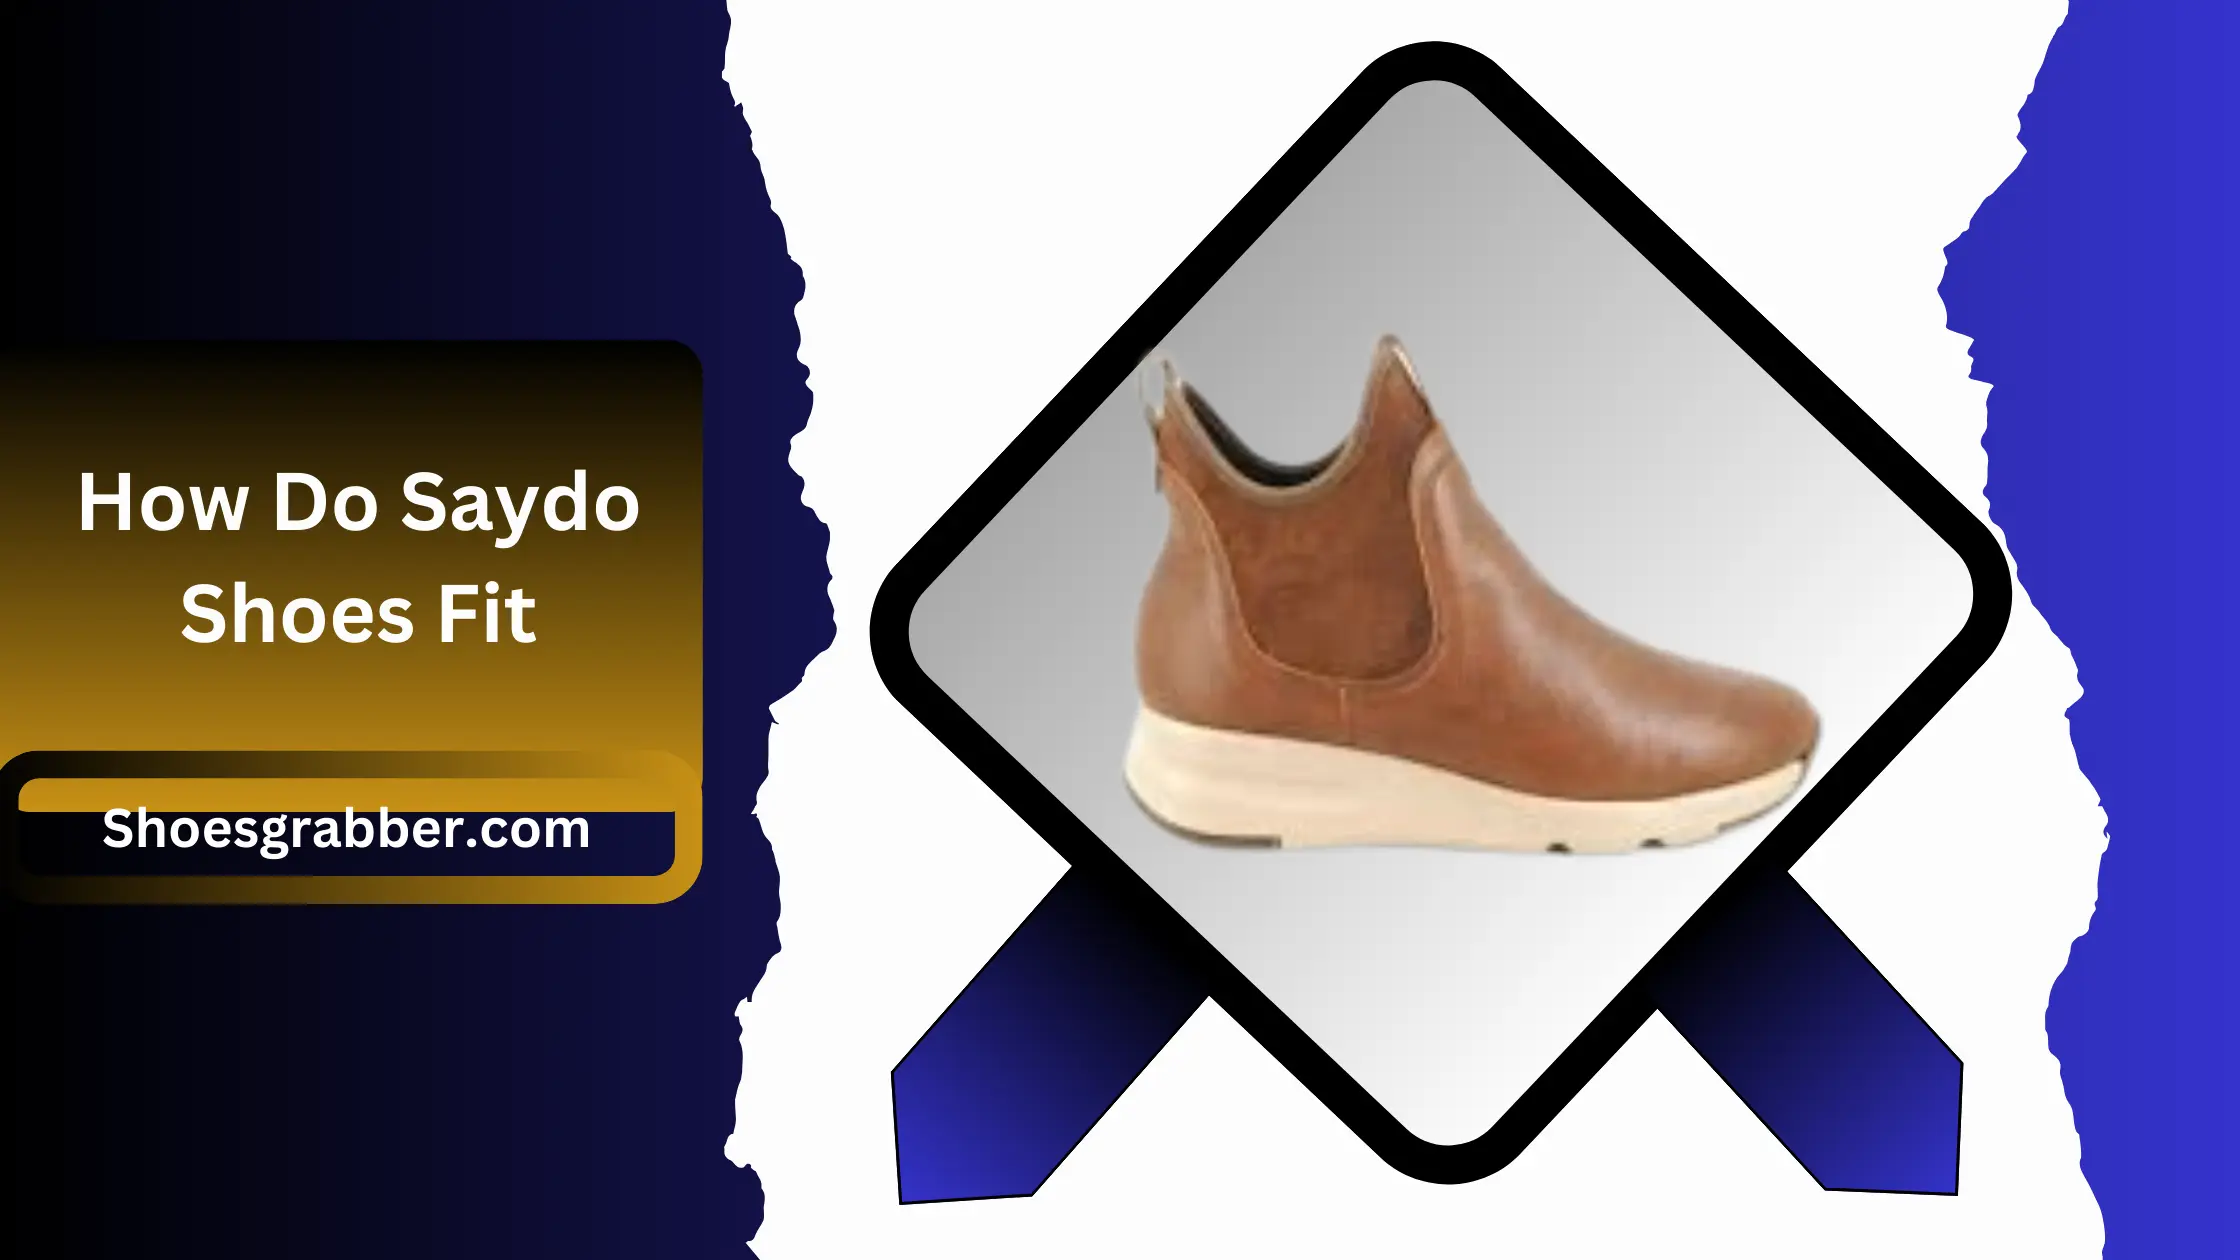 How Do Saydo Shoes Fit - A Comprehensive Guide